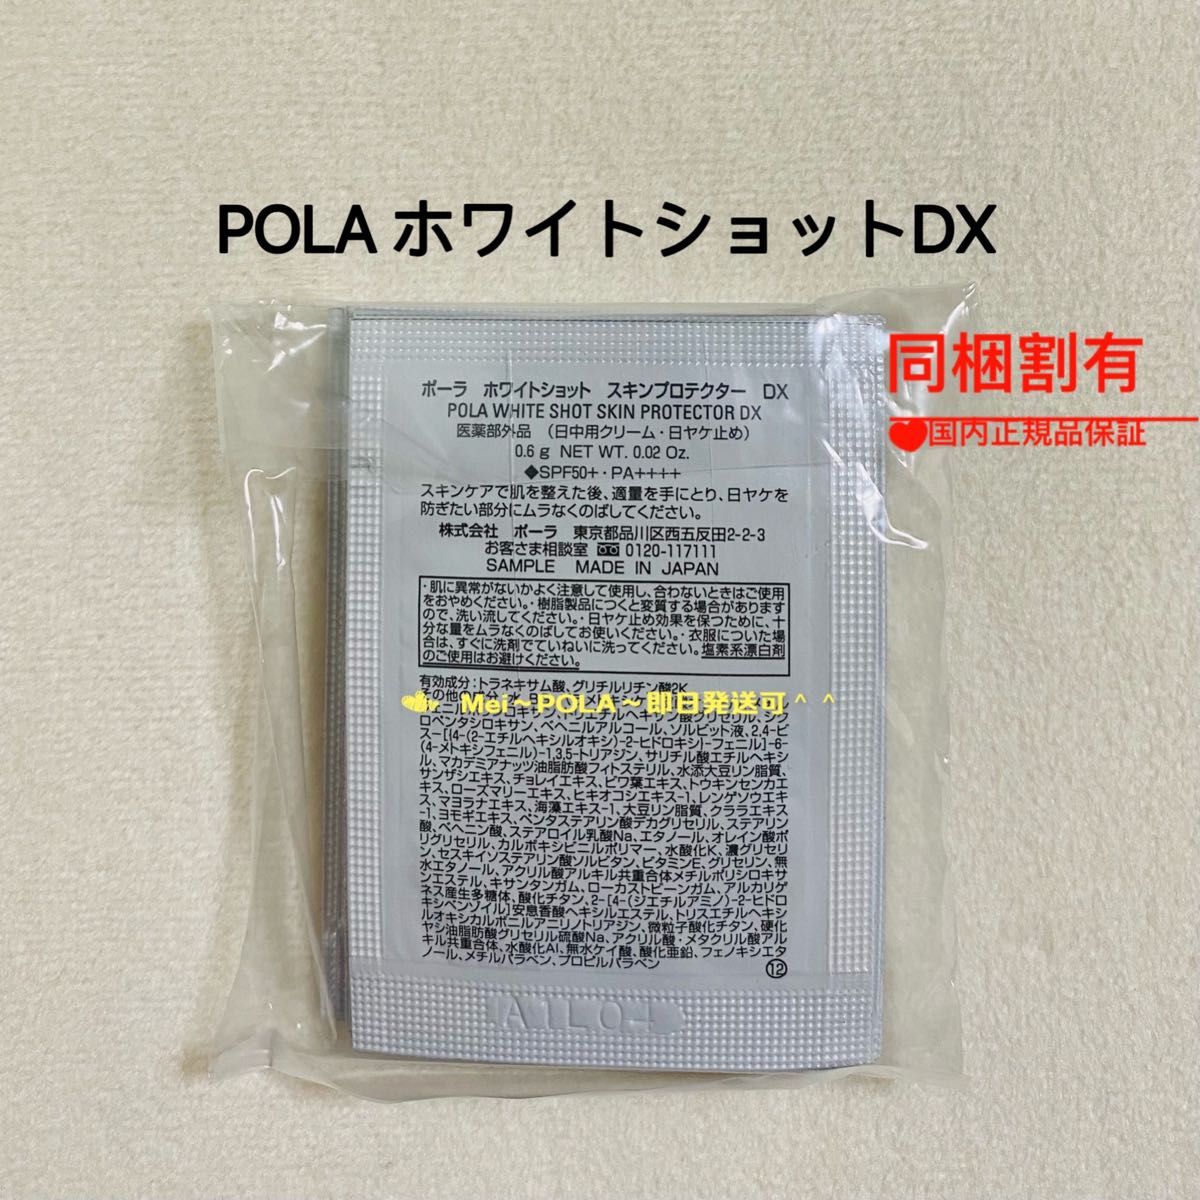 pola ホワイトショットスキンプロテクターDX 0.6g 50包